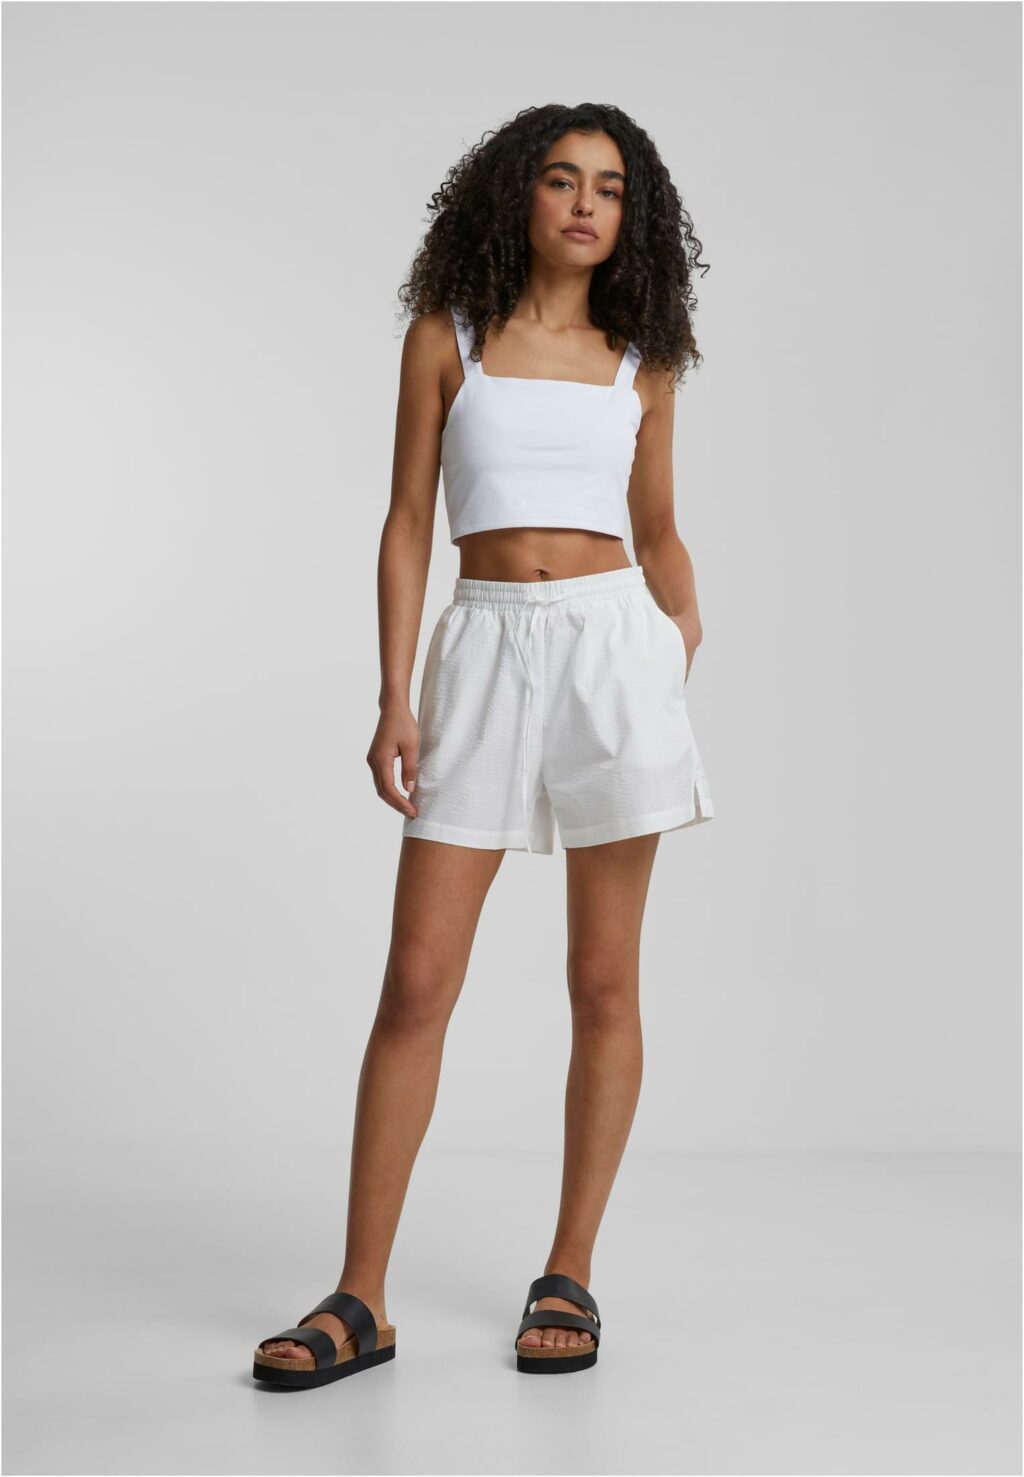 Urban Classics Ladies Seersucker Shorts white TB6212